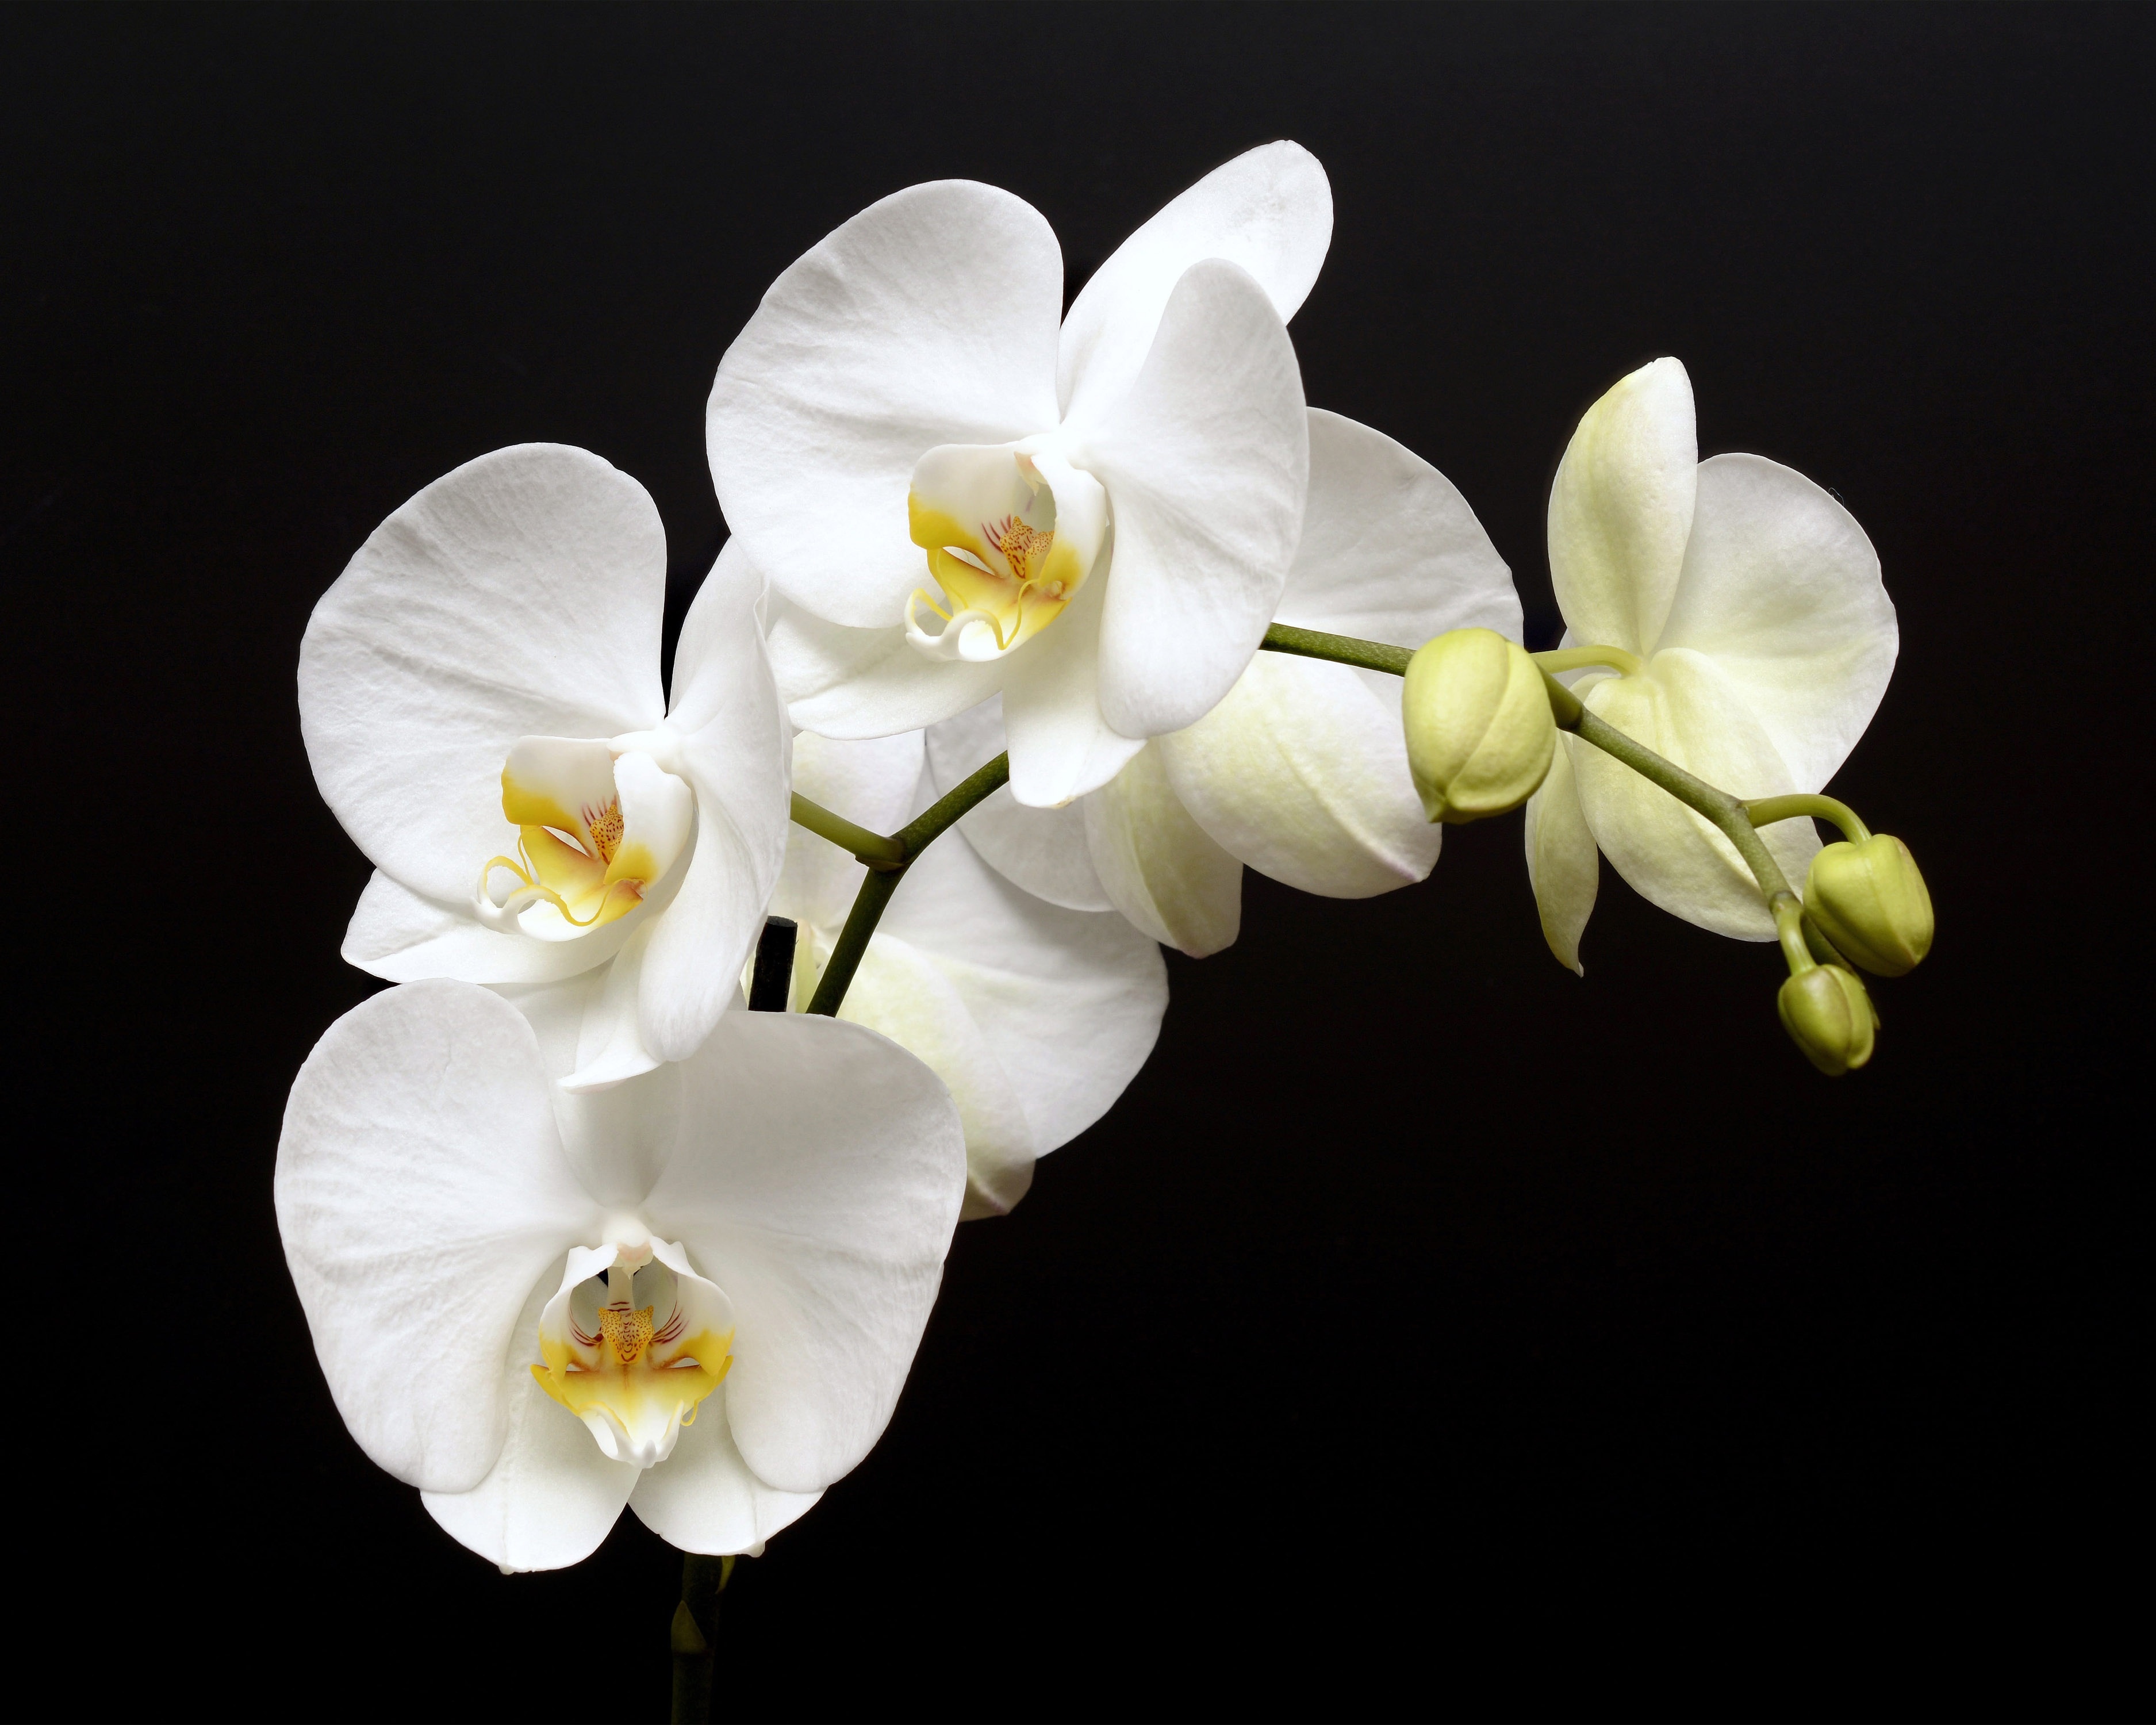 Flowers orchids. Фаленопсис белый. Орхидея фаленопсис Аляска. Фаленопсис Даймонд Уайт. Ветка орхидеи фаленопсис.